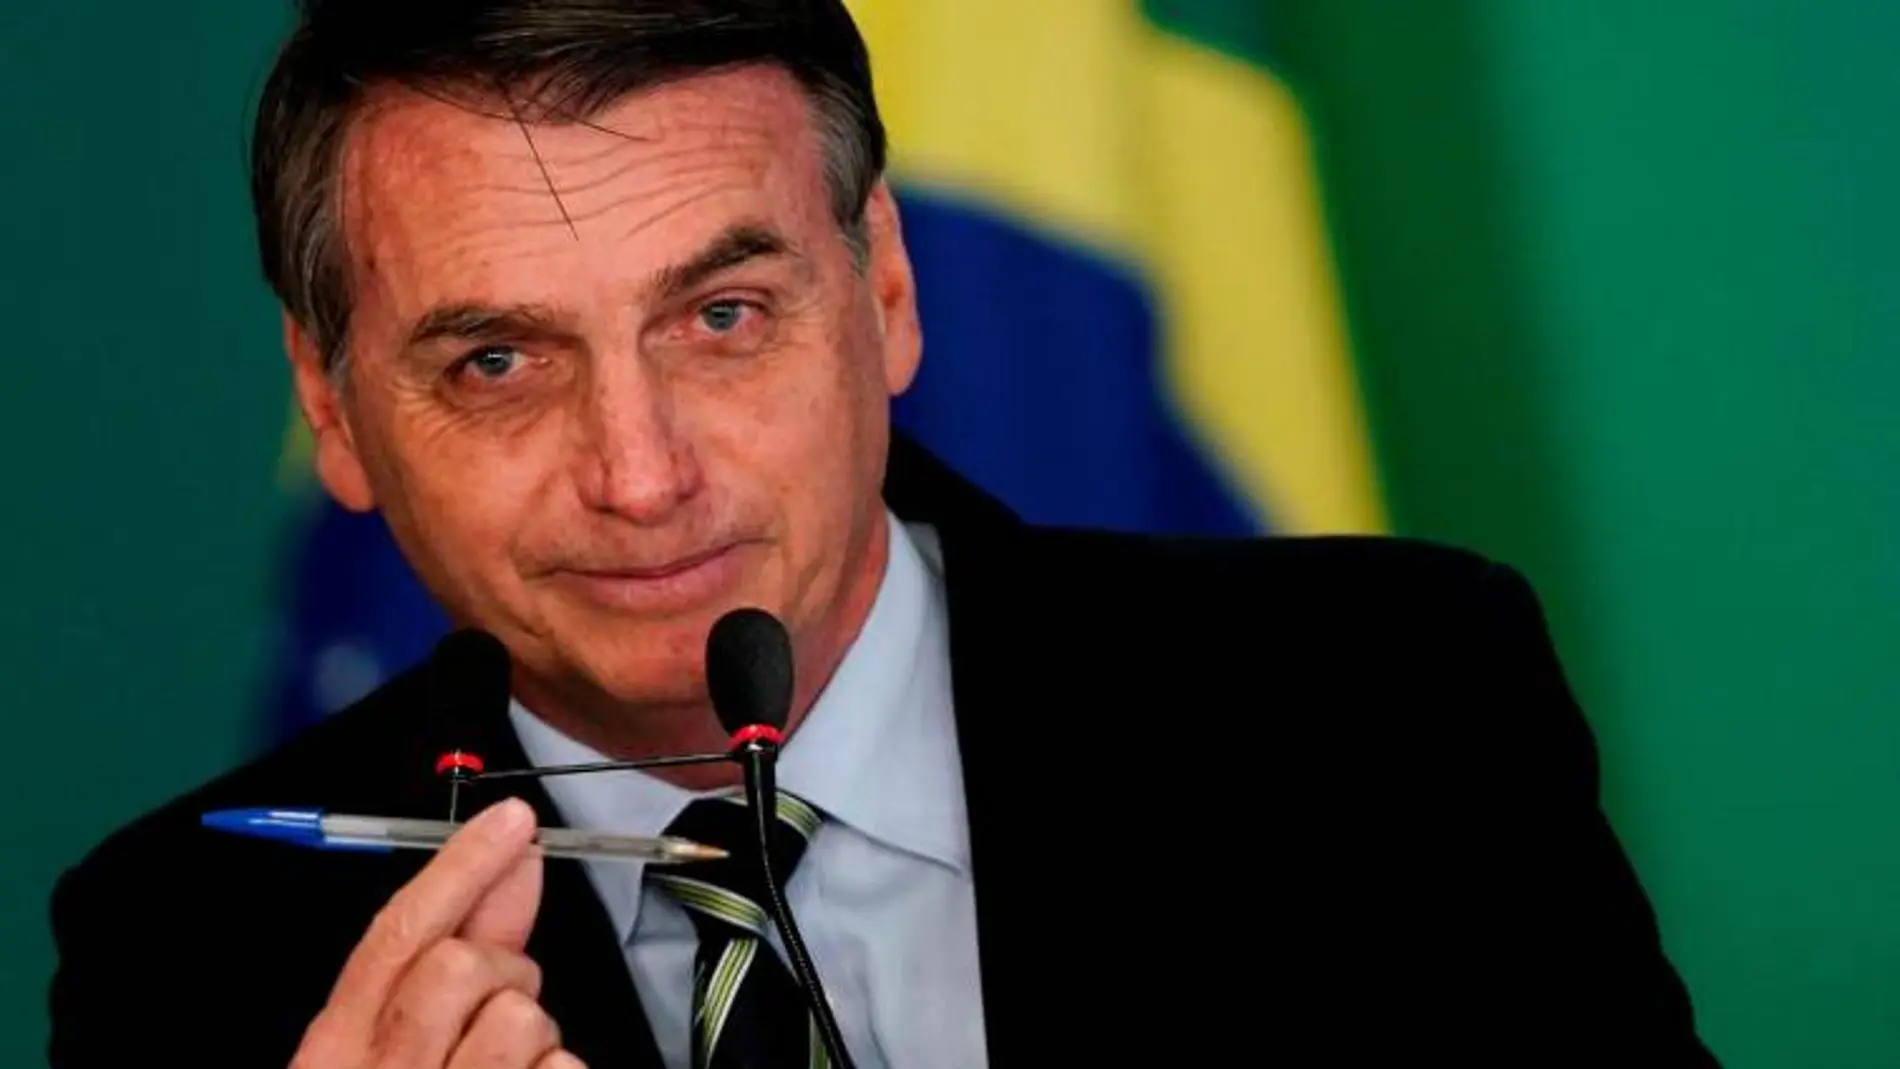 El presidente de Brasil Jair Bolsonaro, en una imagen de archivo / Reuters